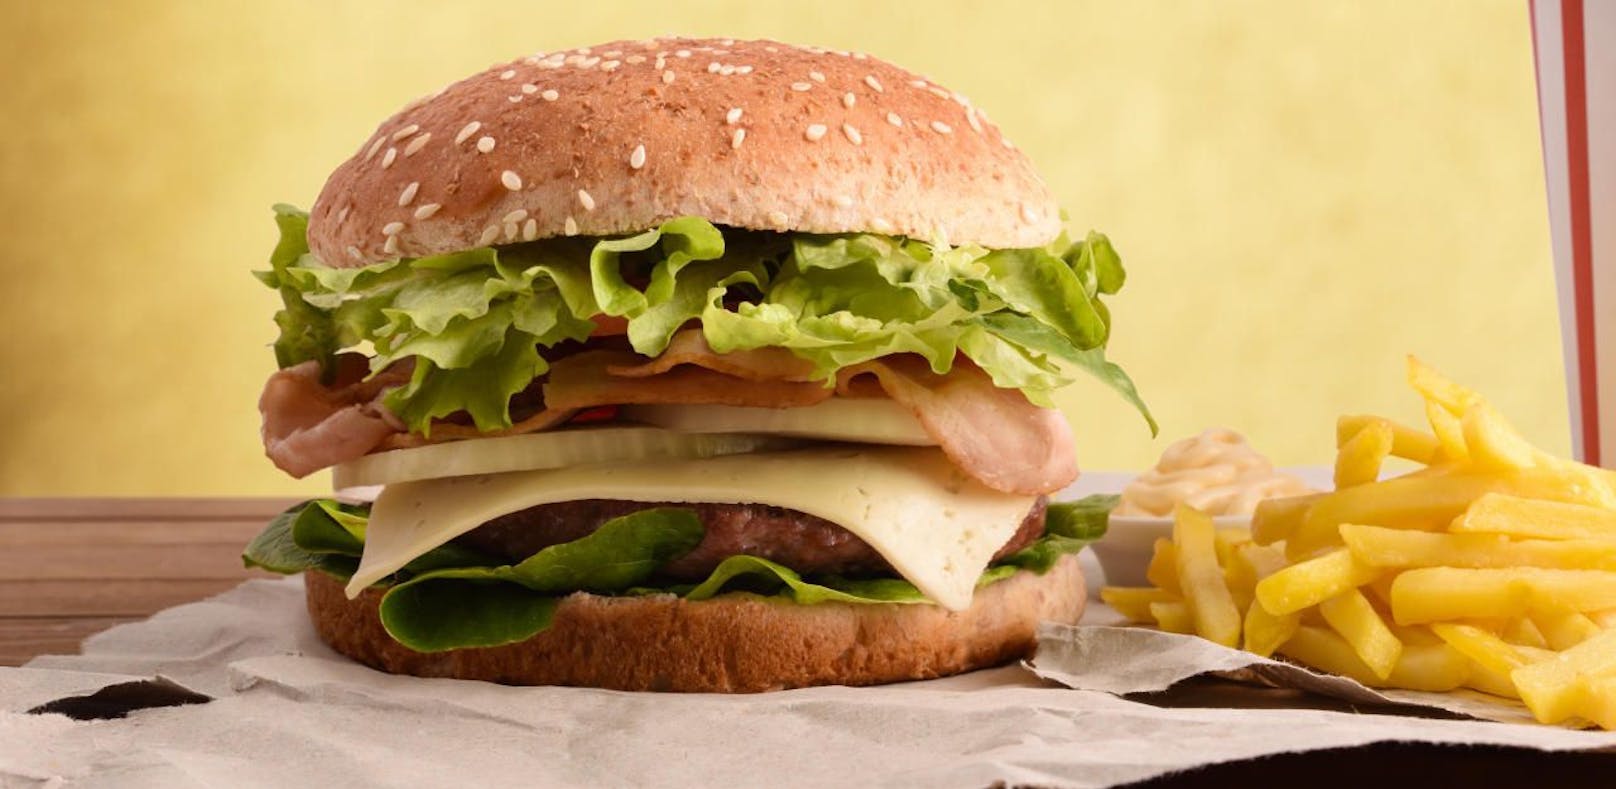 Bruck: Ärger wegen zwei Cheeseburger-Menüs mit Pommes.